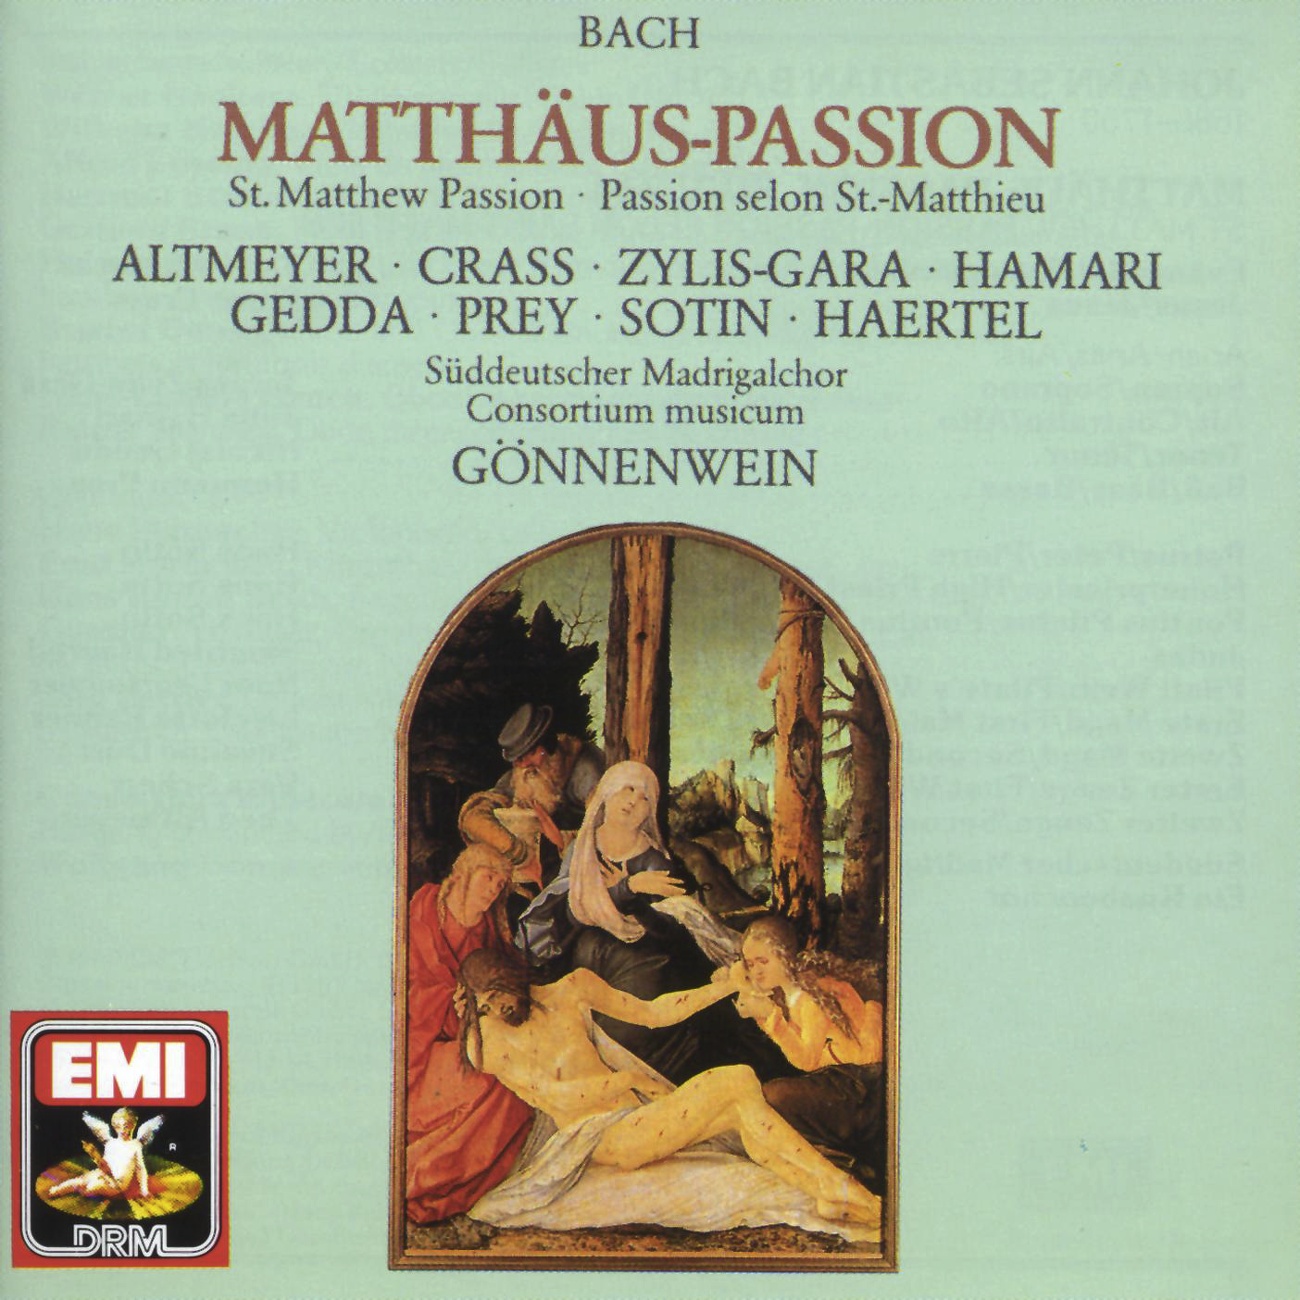 Matth usPassion BWV 244  Oratorium in 2 Teilen 1989 Digital Remaster, 1. Teil: Nr. 7  Chor: Wozu Dienet Dieser Unrat? Chor I